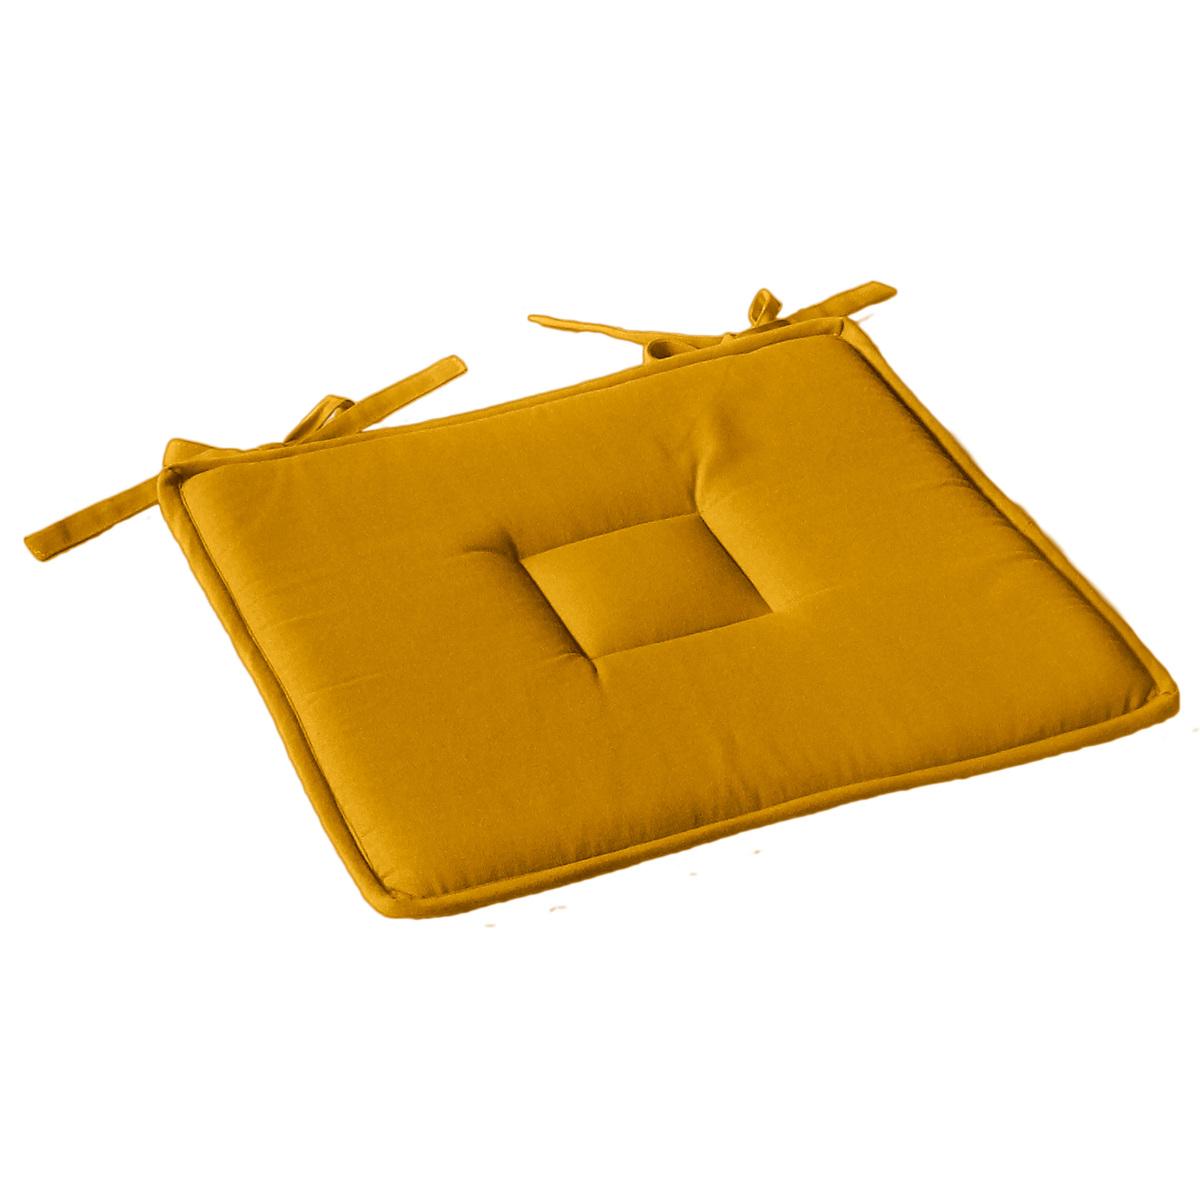 Galette de chaise - 40 x 40 cm - Jaune moutarde